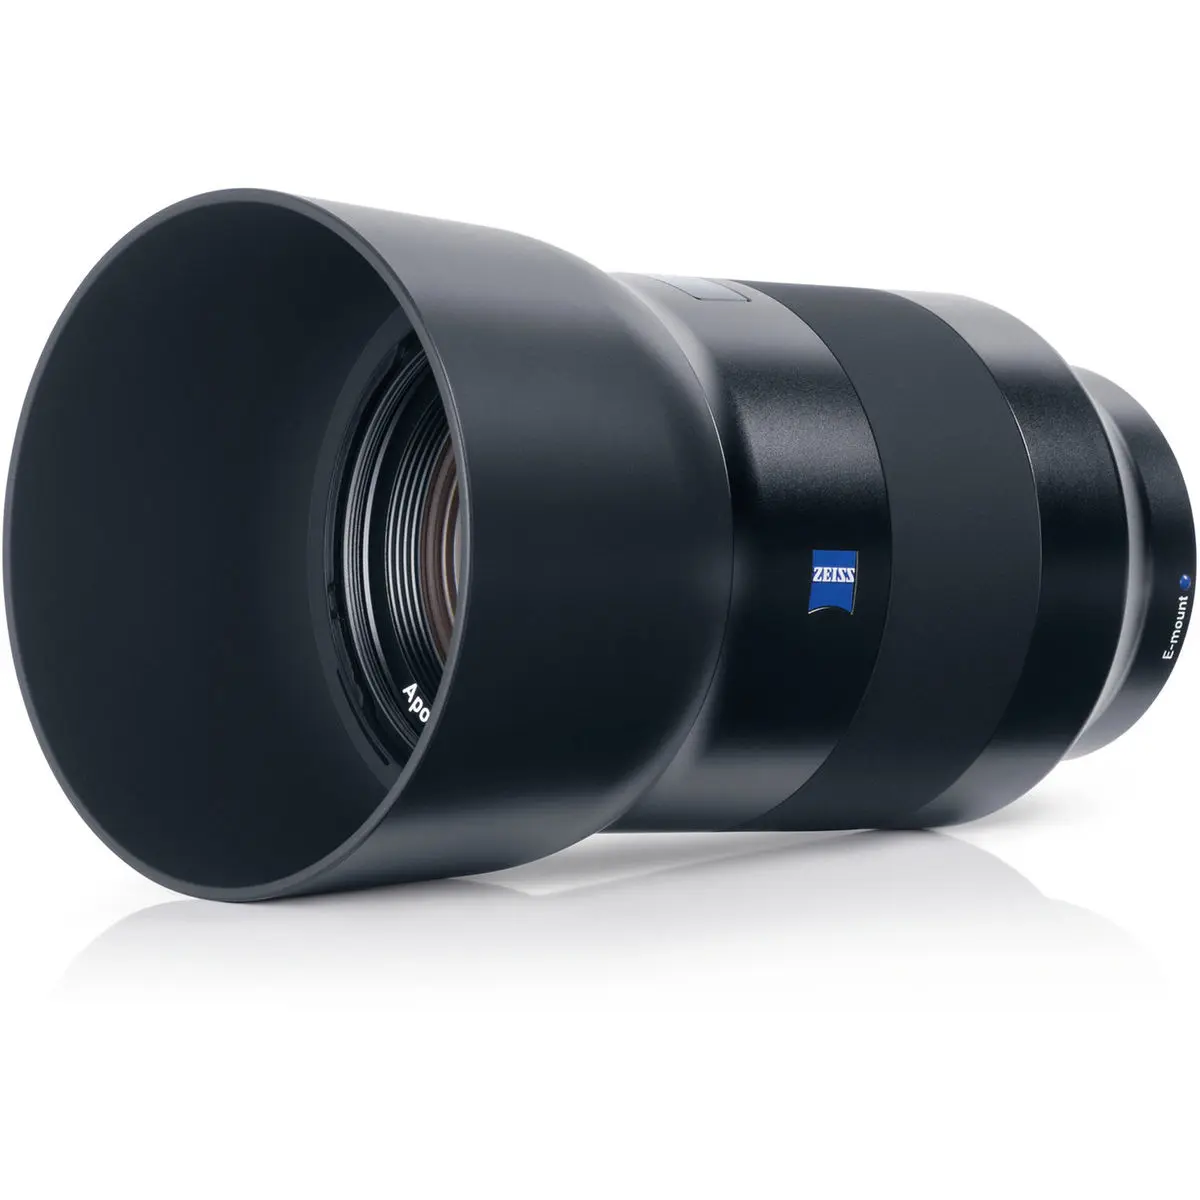 1. Carl Zeiss Batis 135mm F2.8 for Sony E mount Lens